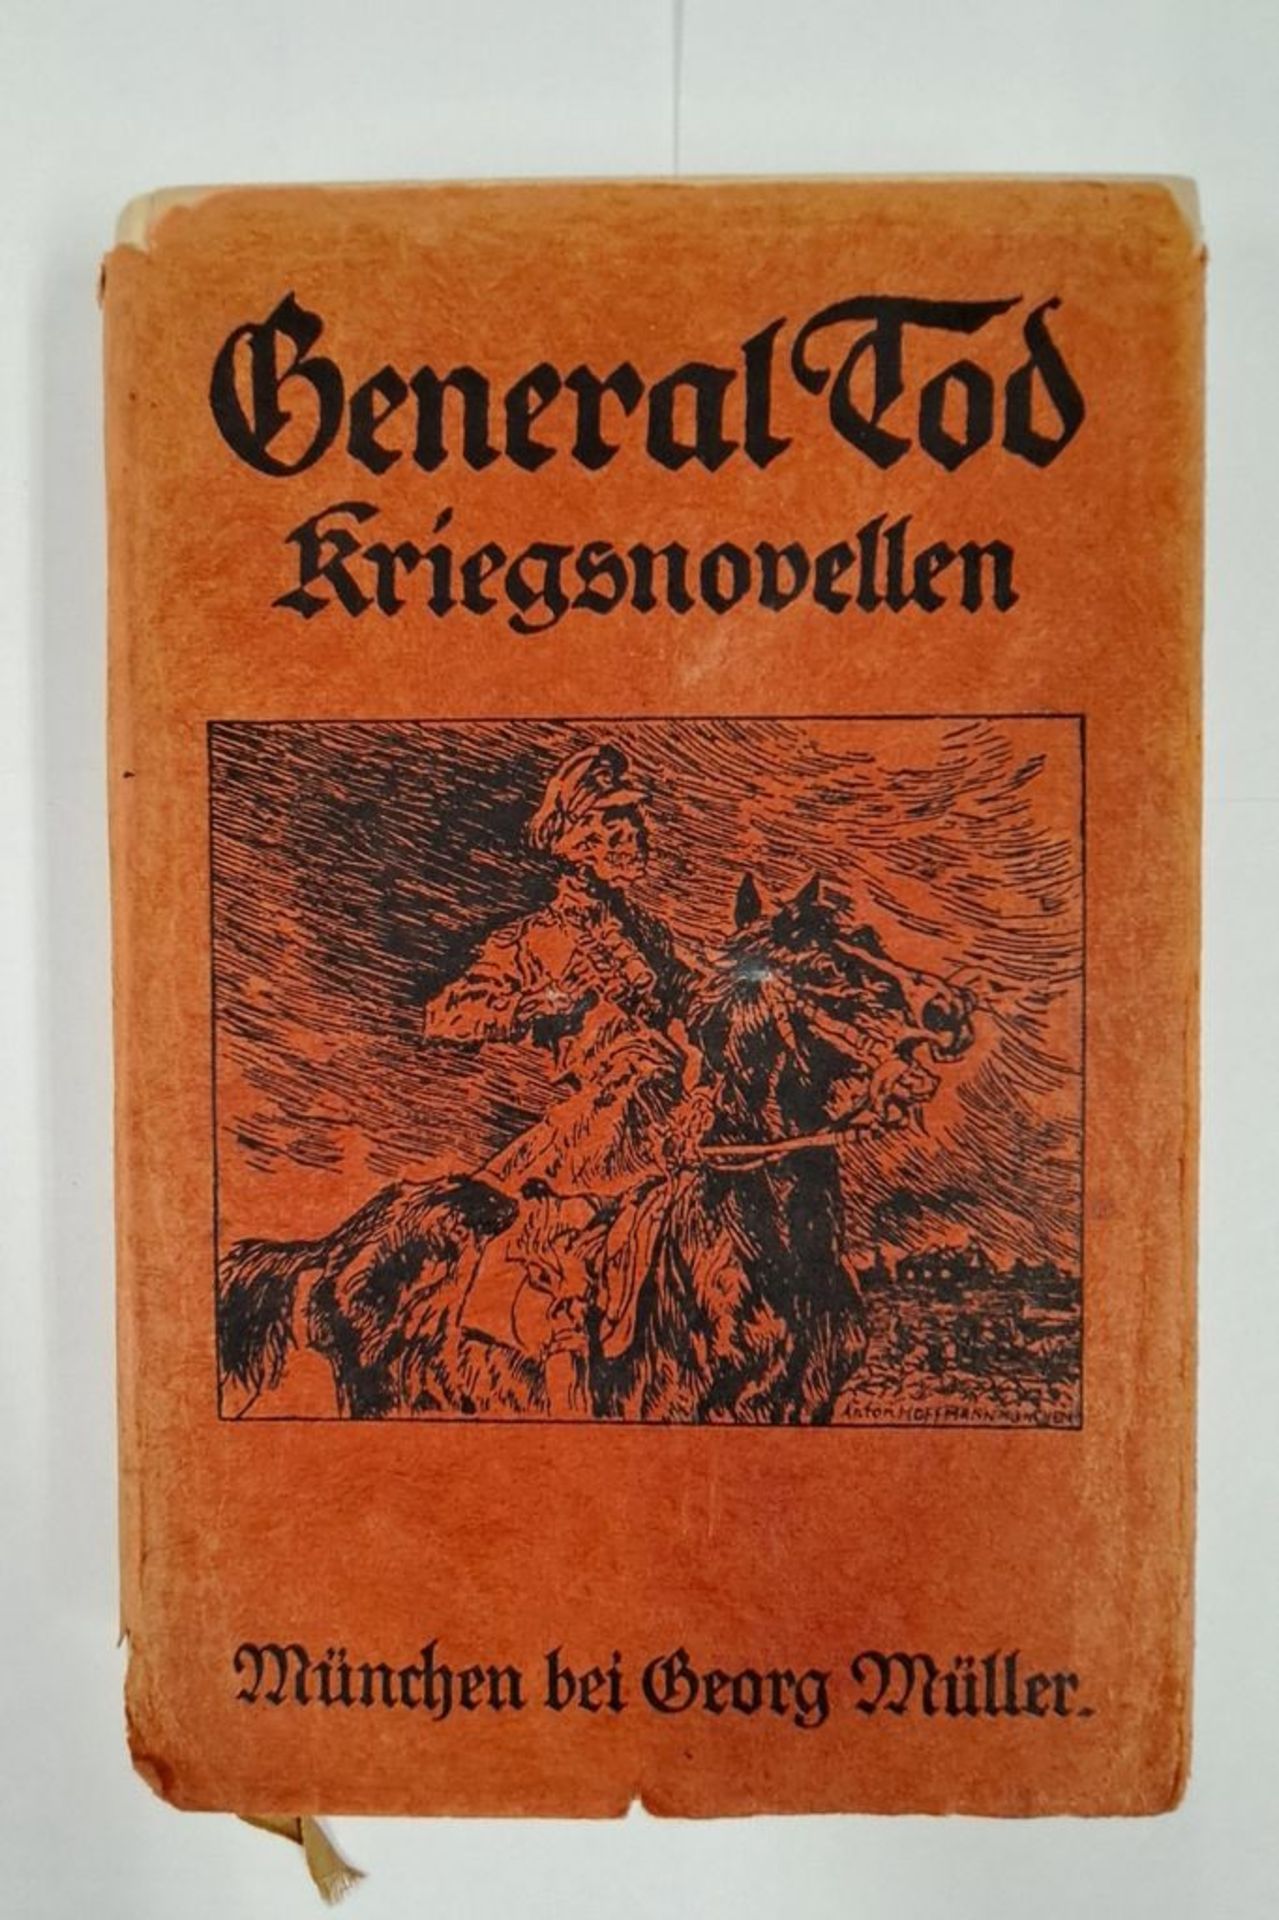 Buch "General Tod - Kriegsnovellen" 1915